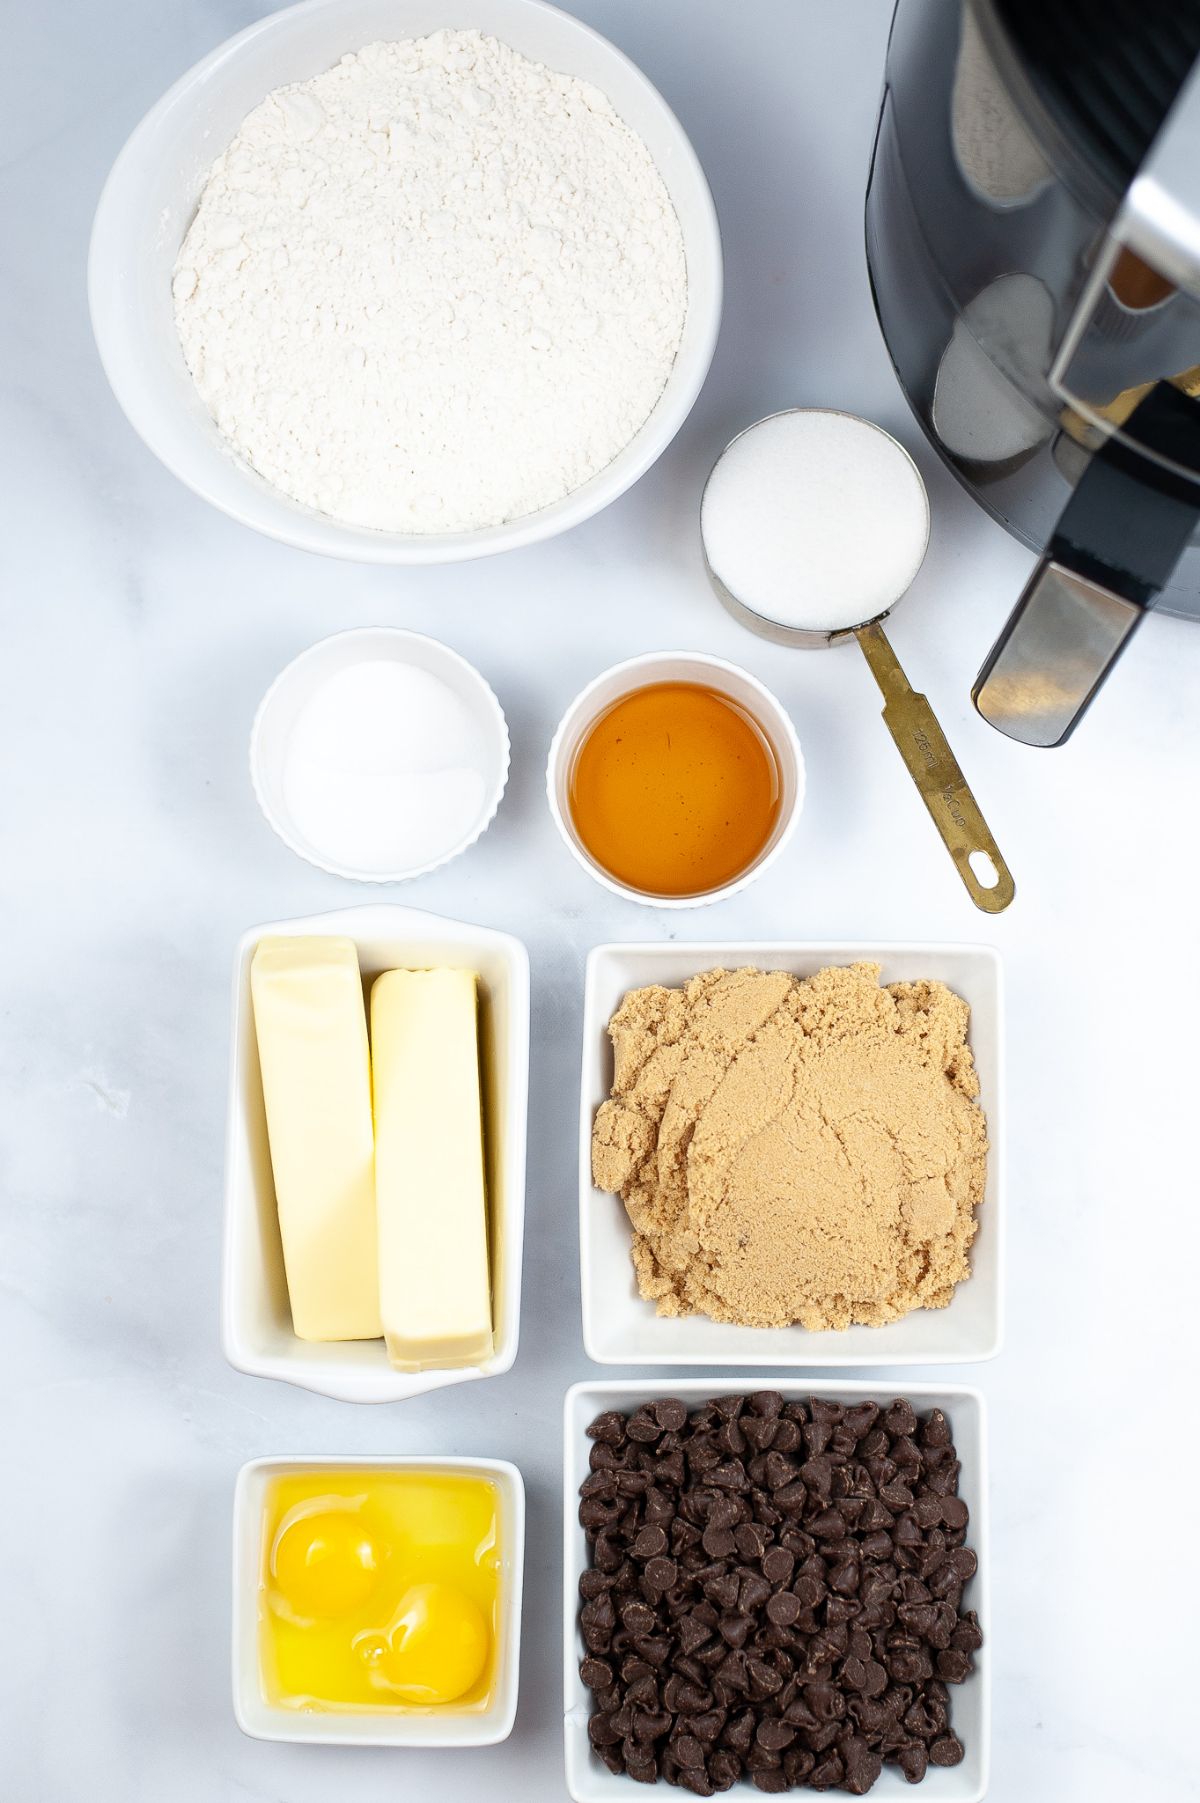 Ingredients used to make Air Fryer Chocolate Chip Cookies.